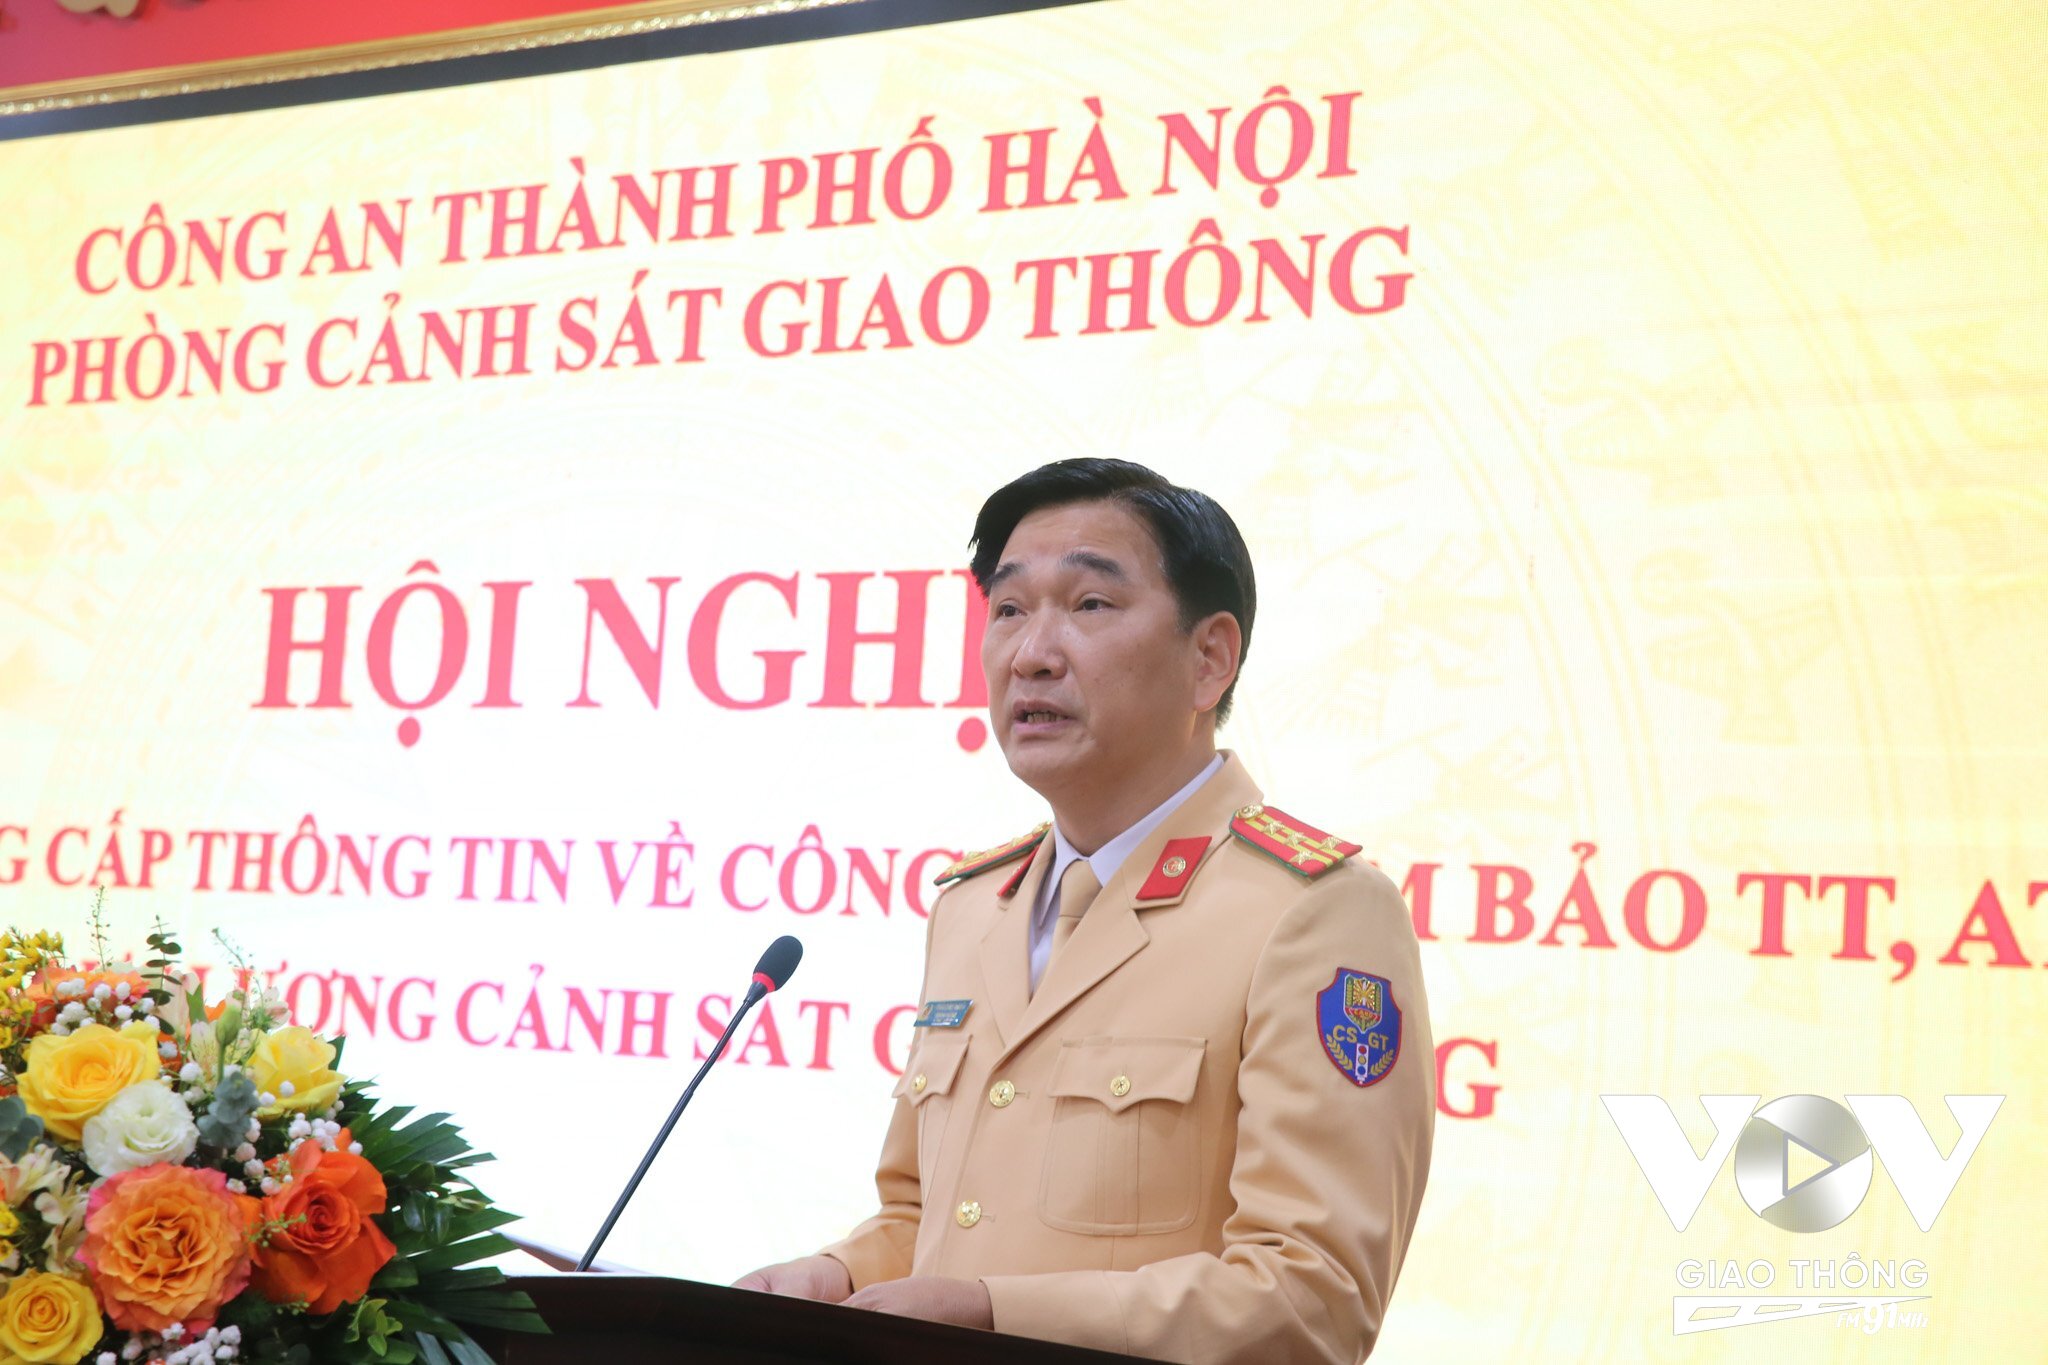 Đại tá Trần Đình Nghĩa, Trưởng phòng CSGT – Công an TP Hà Nội